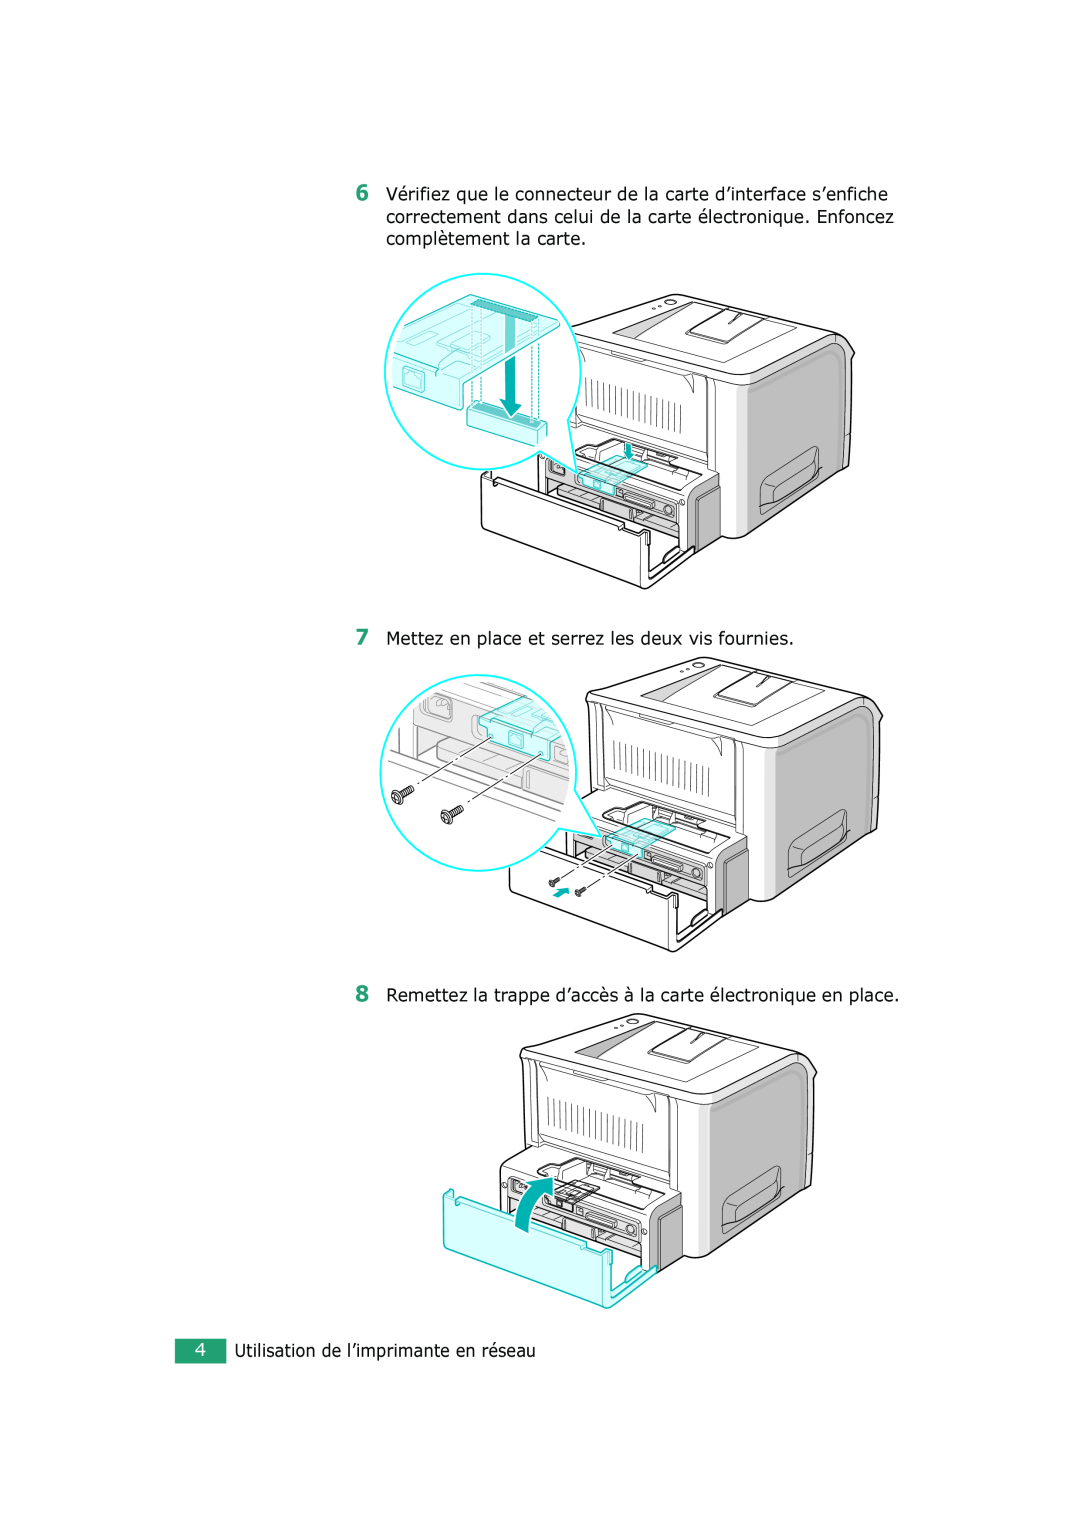 Xerox 3150 Mettez en place et serrez les deux vis fournies, Remettez la trappe d’accès à la carte électronique en place 